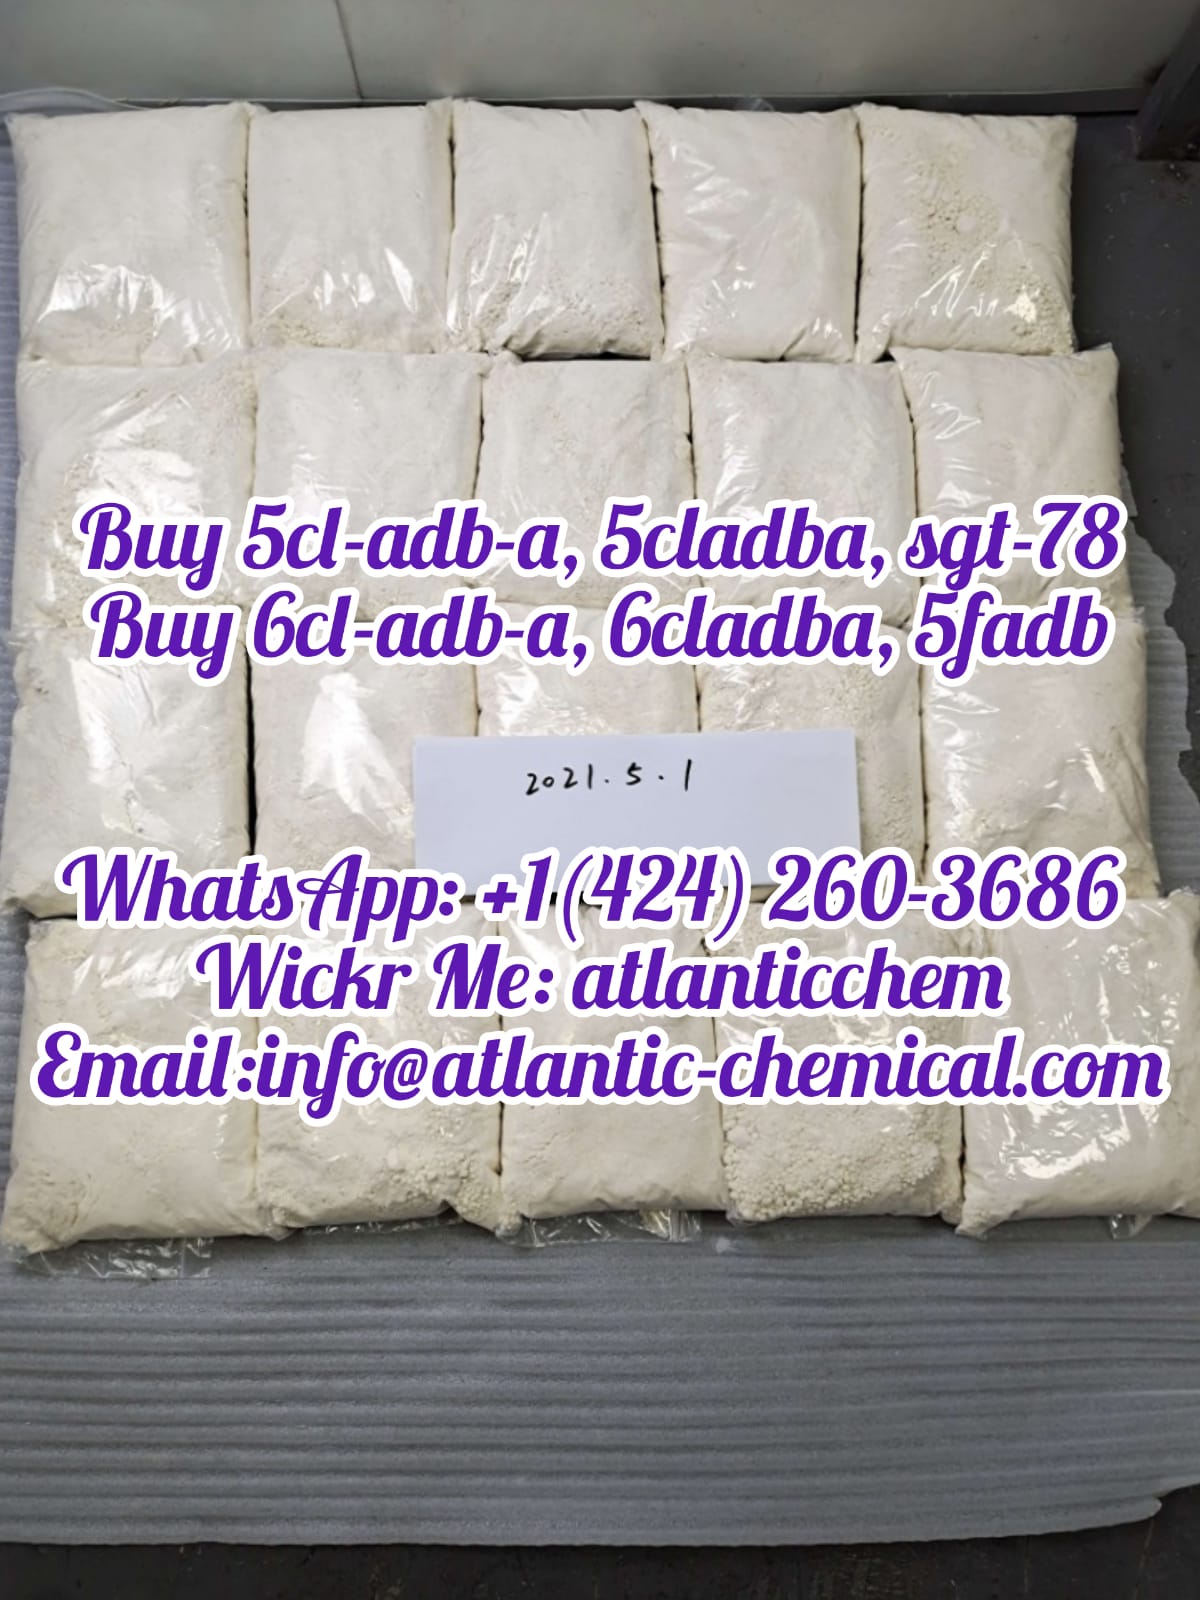 Buy 5cladba online, 5cladba for sale,  Buy 6cladba online, 6cladba for sale,  Buy adb-butinaca, - photo